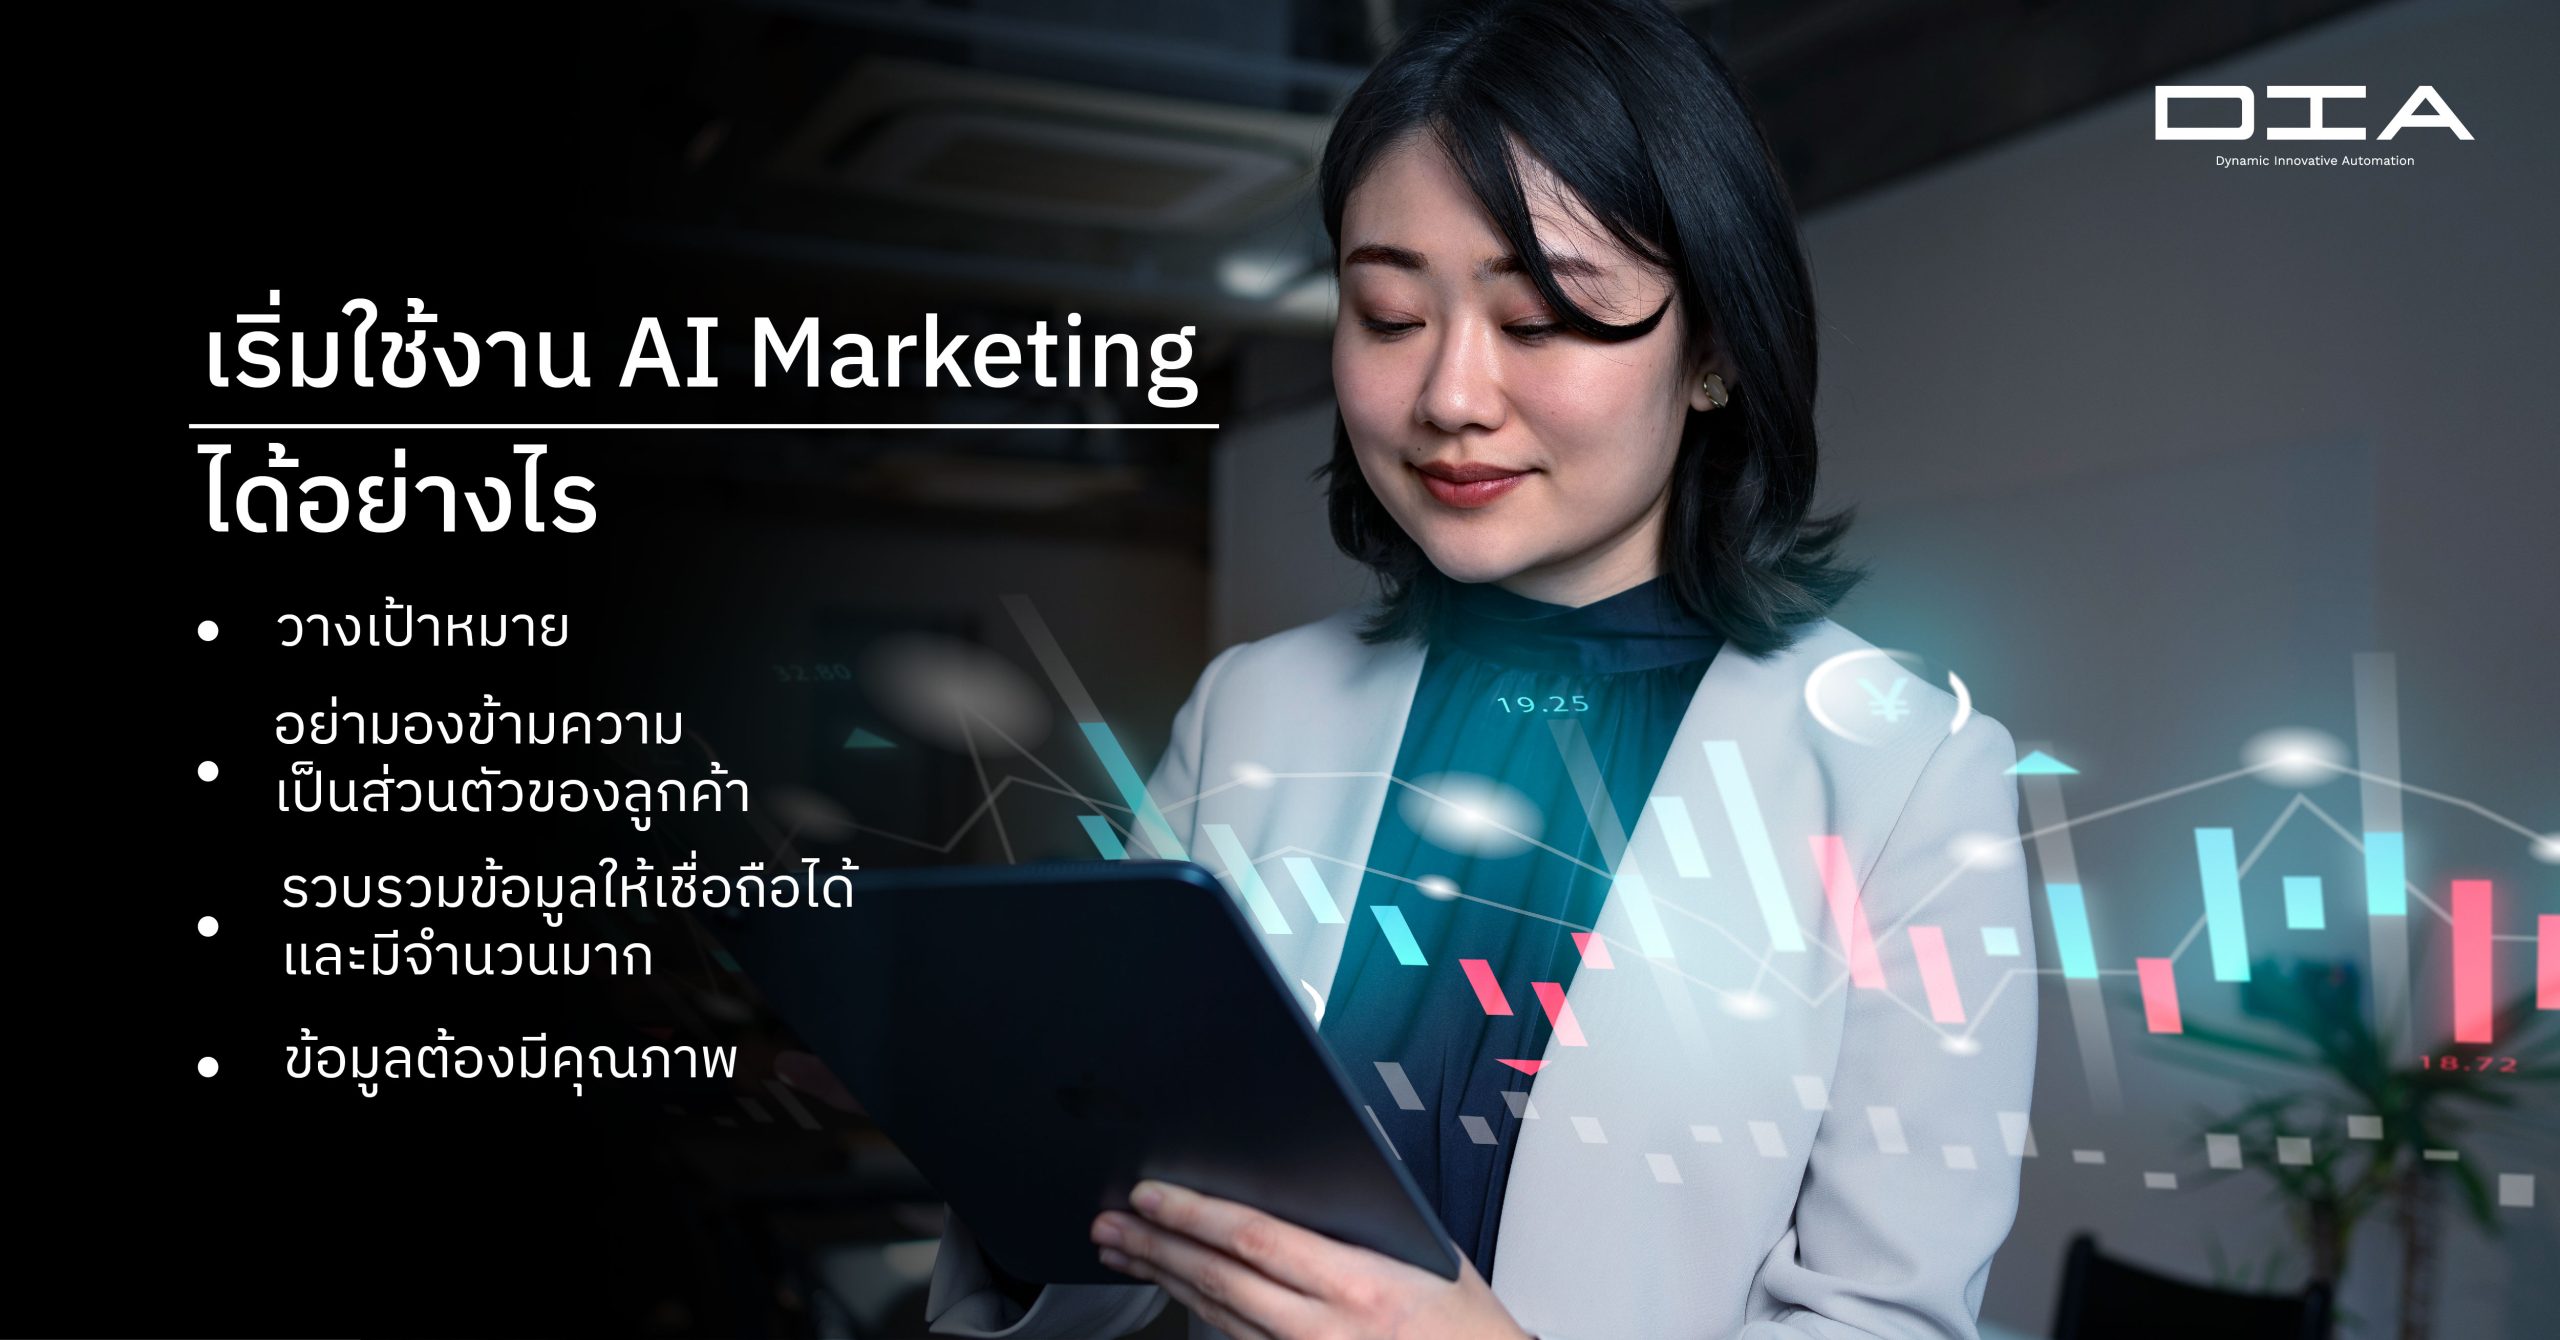 เริ่มใช้งาน AI Marketing ได้อย่างไร